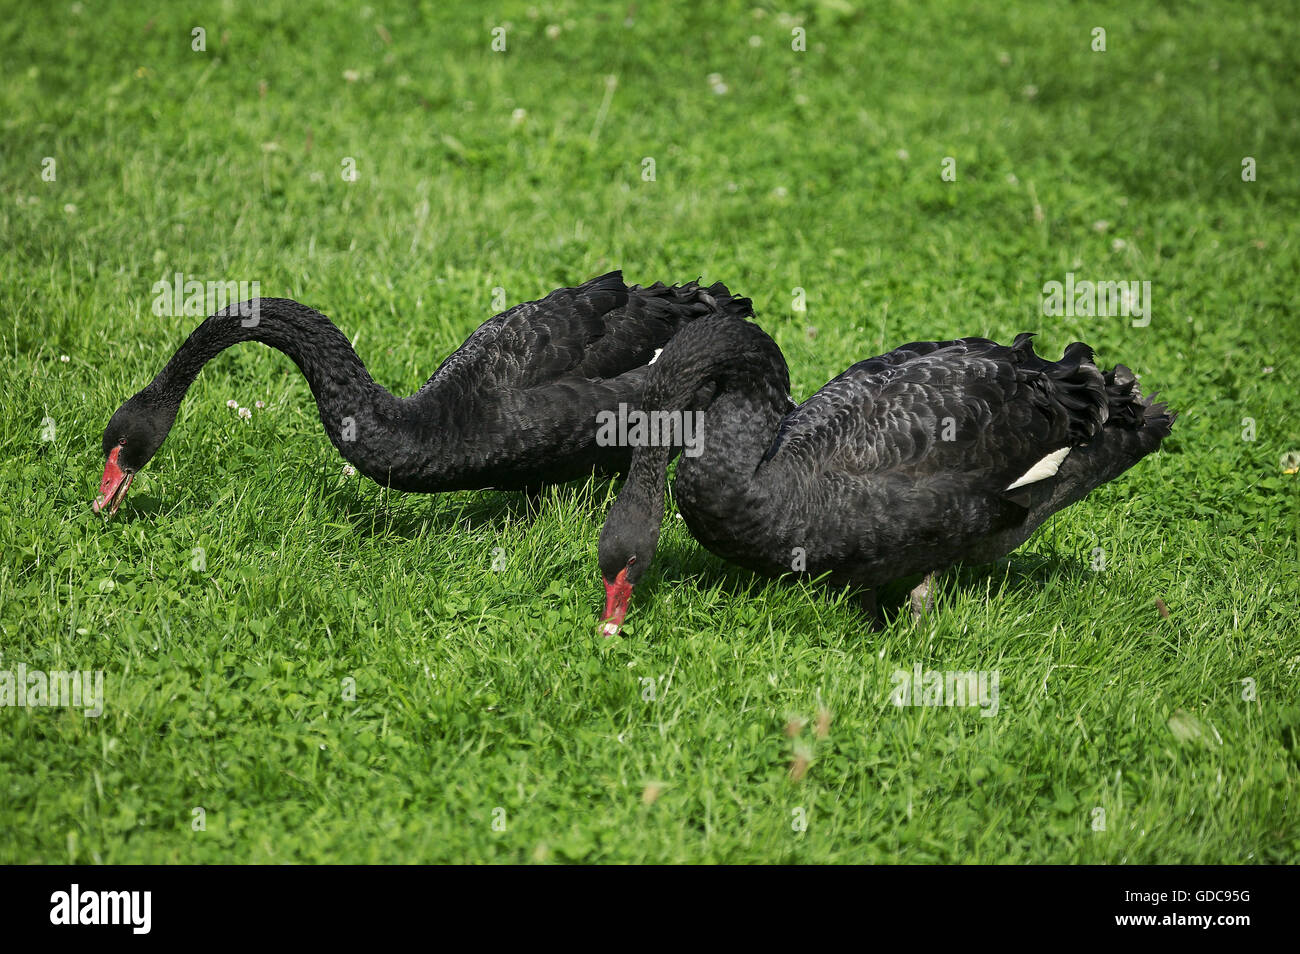 BLACK SWAN cygnus atratus, PAIR EATING GRASS Stock Photo